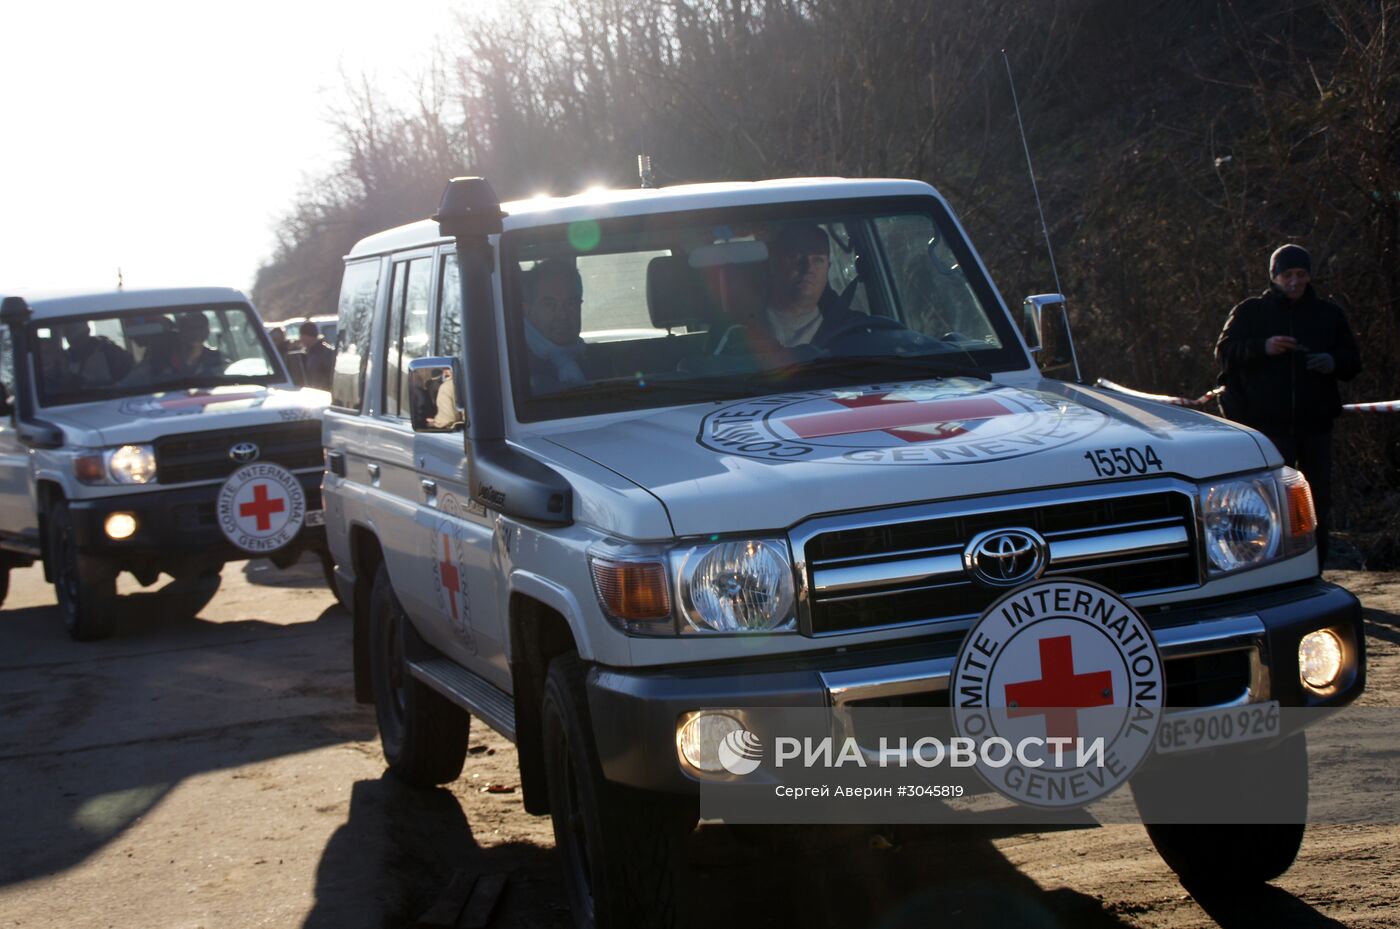 Президент Международного комитета Красного Креста Петер Маурер посетил станицу Луганская